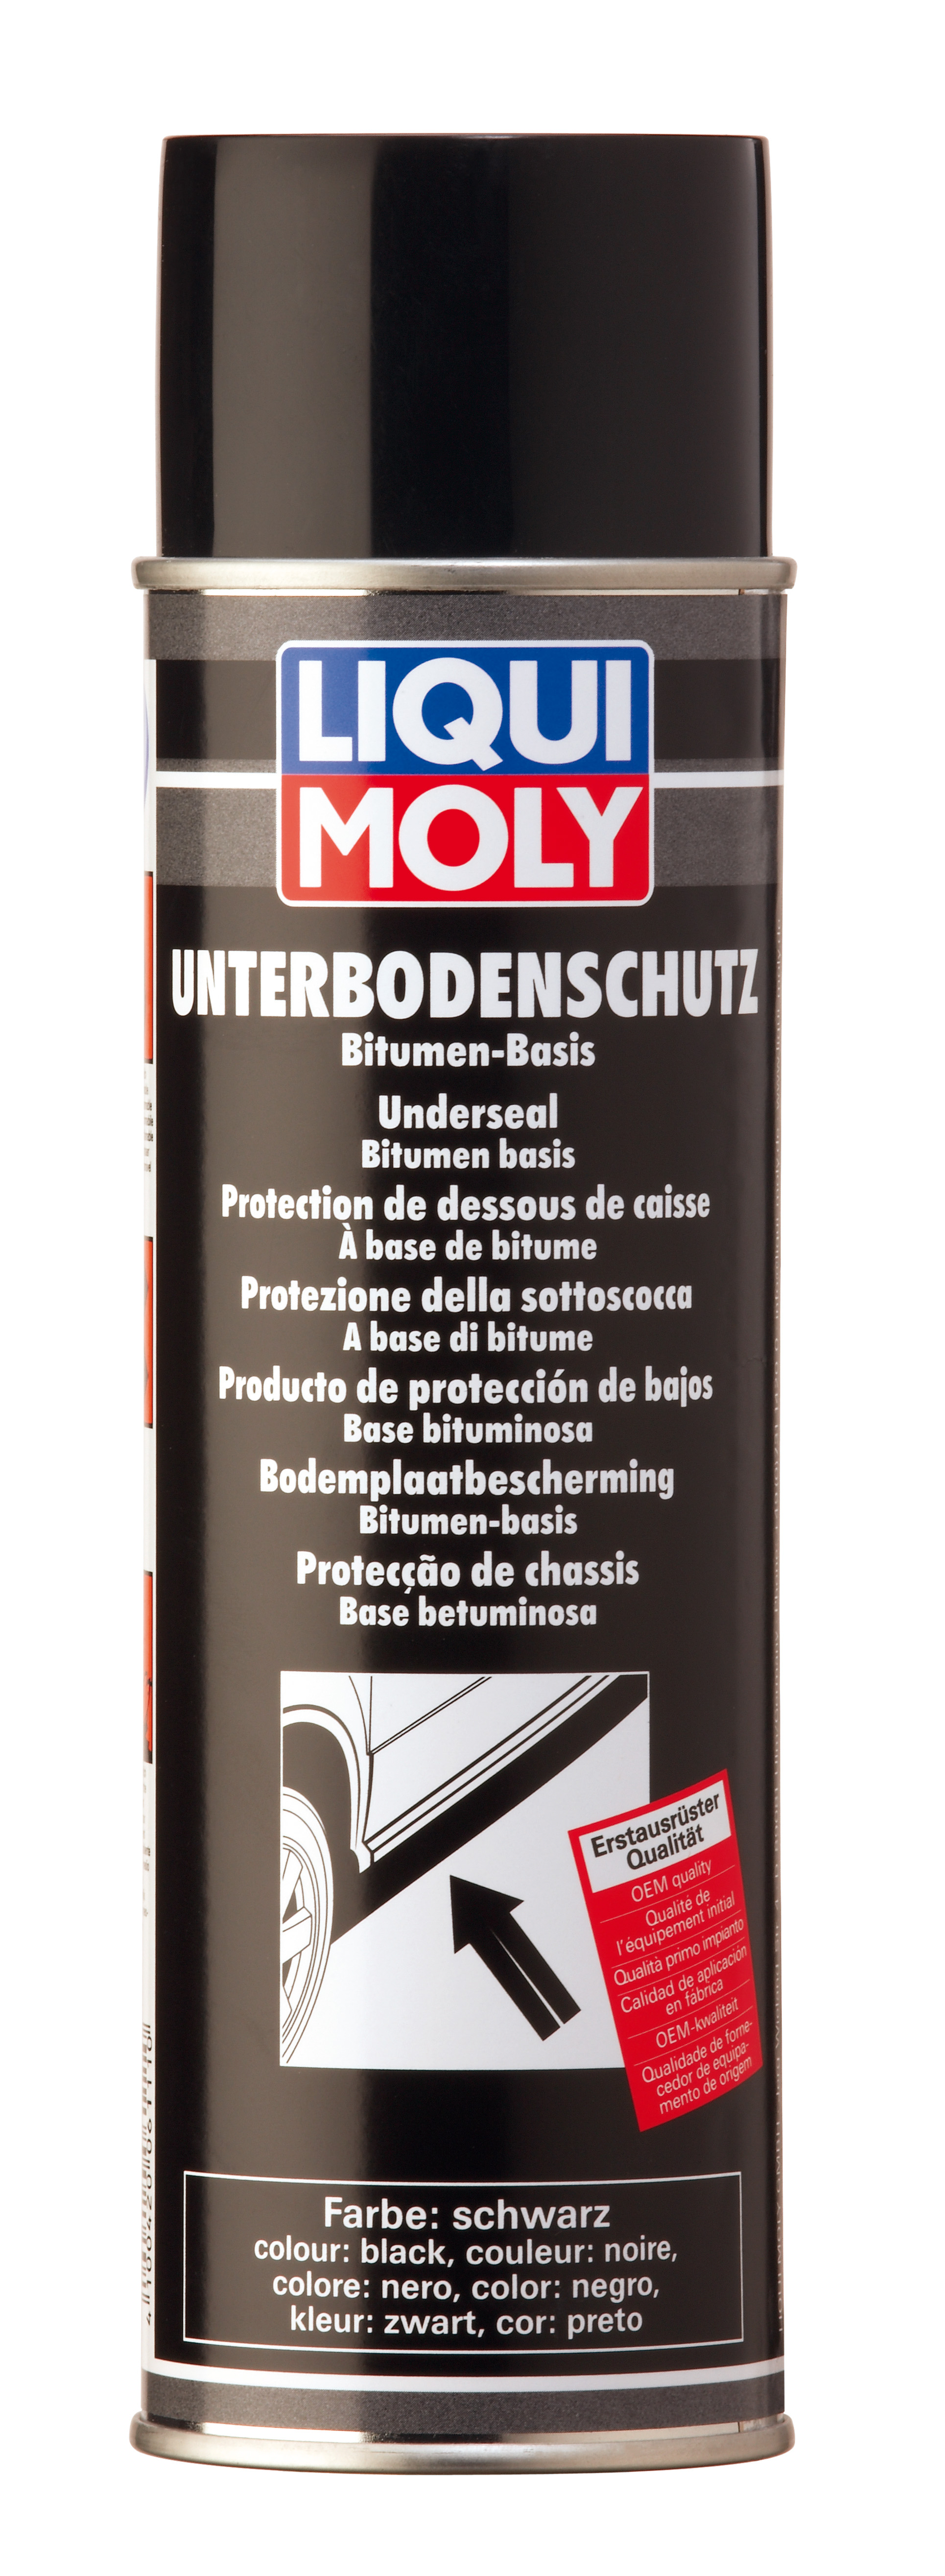 Антикор для днища кузова битум/смола (черный) Unterboden-Schutz Bitumen schwarz, 500мл - Liqui Moly 6111